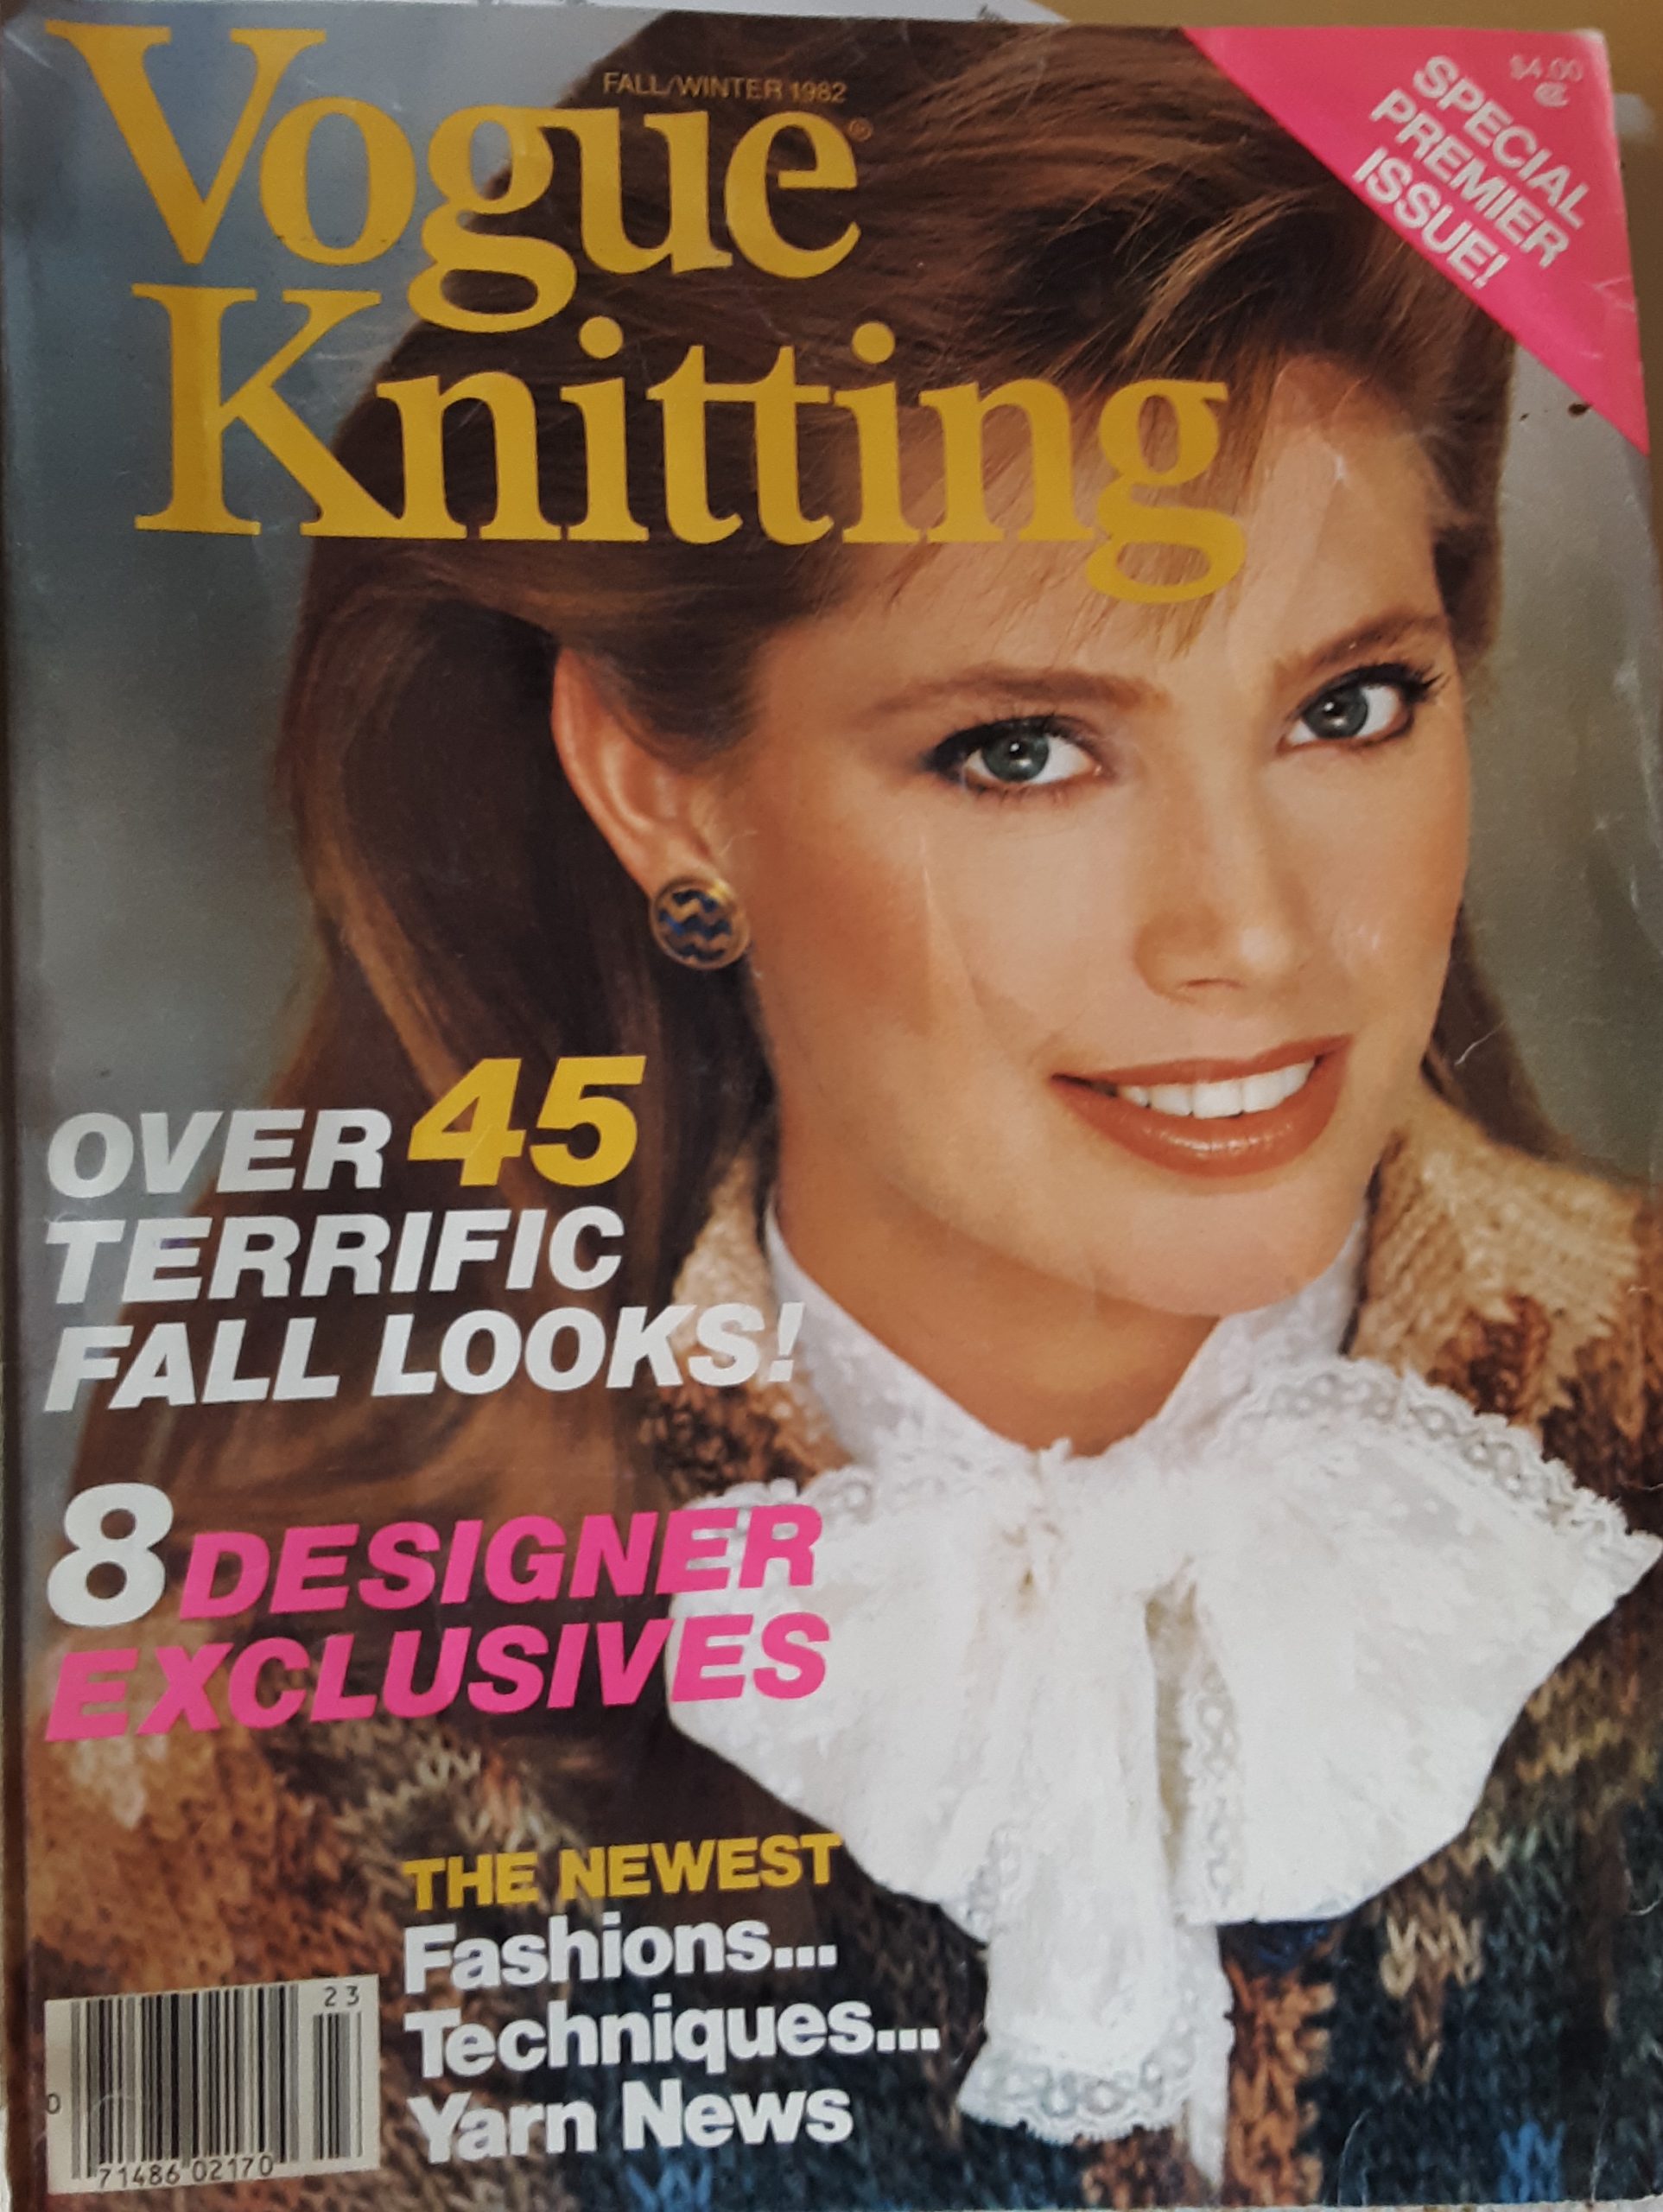 Vogue Knitting Magazine Fall 2022